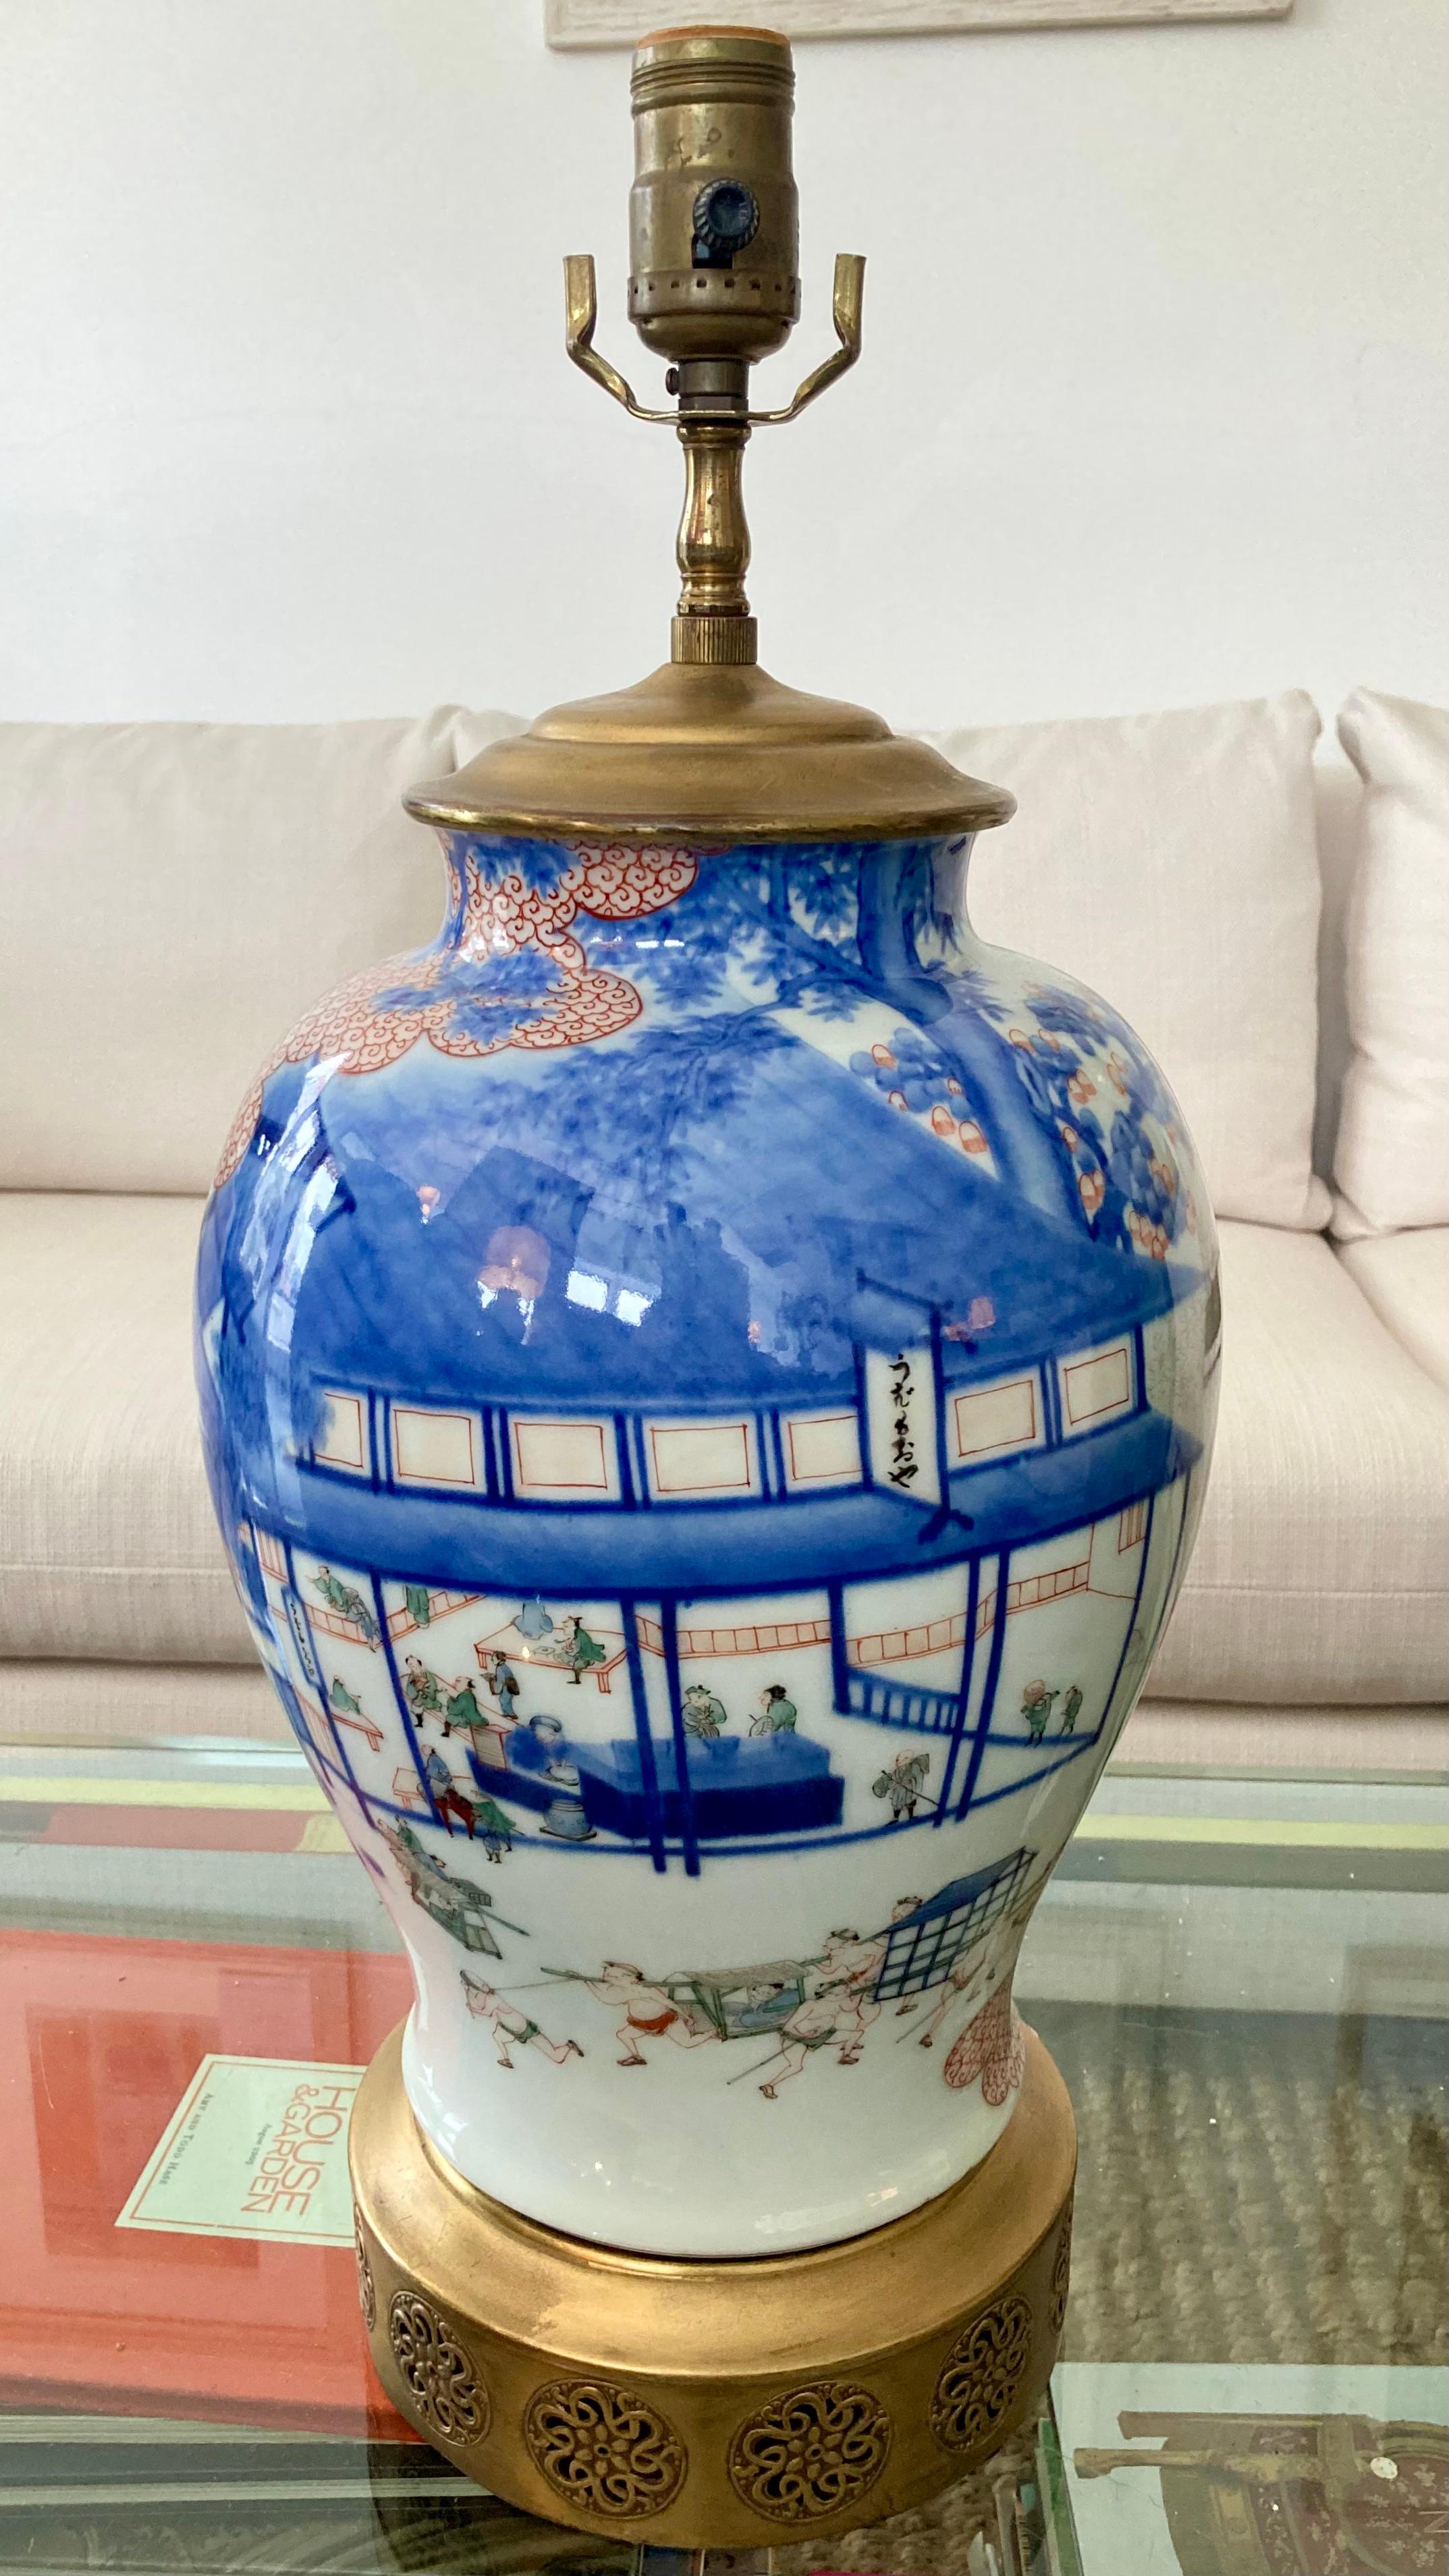 Magnifique lampe de table en porcelaine asiatique. Magnifique scène de paysage peinte à la main avec des couleurs et des détails magnifiques. Il suffit d'ajouter votre style de nuance préféré.